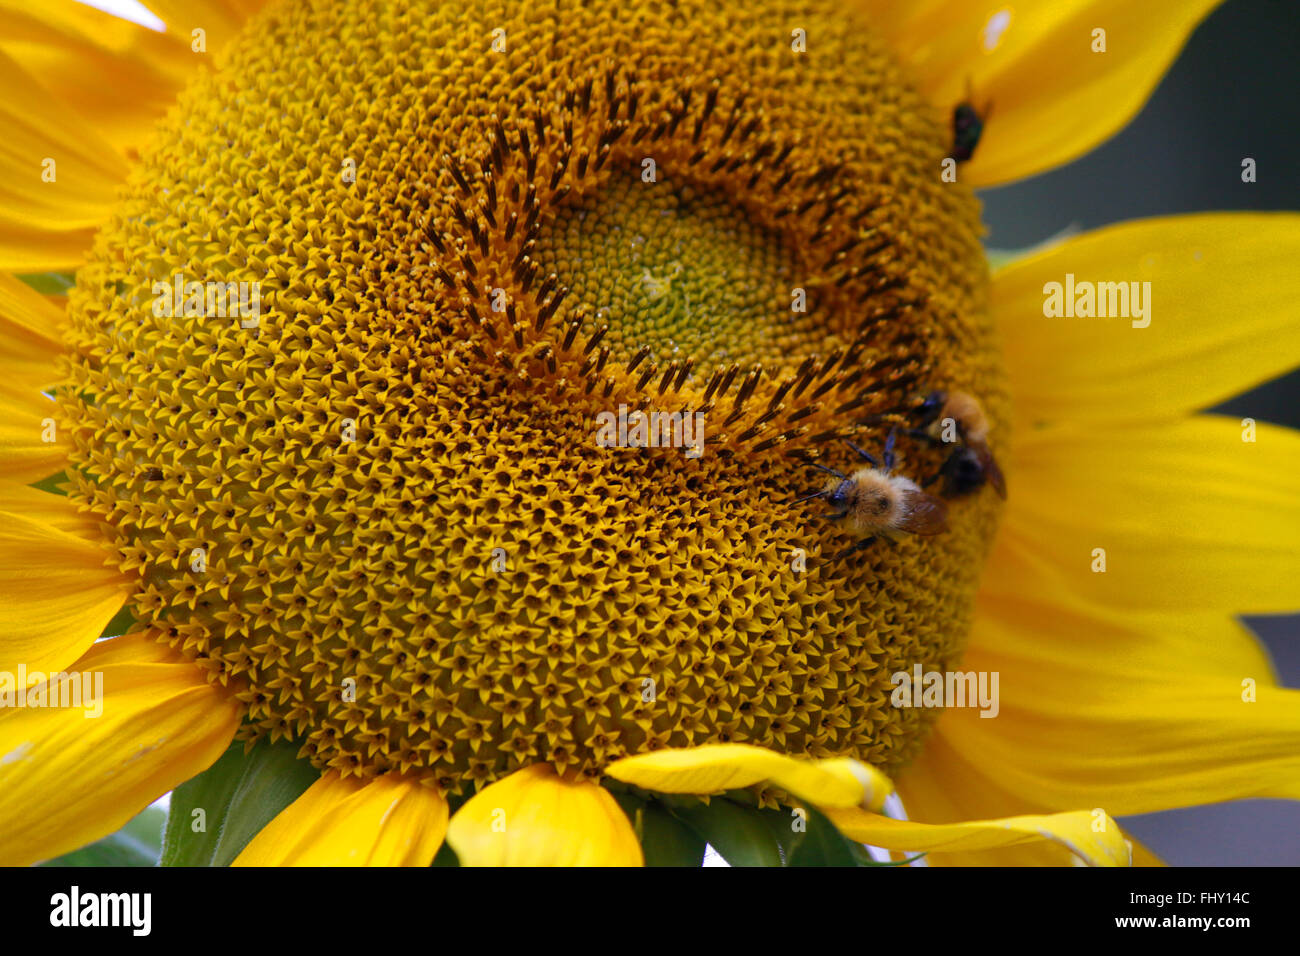 Sonnenblume mit Hummeln - spaetsommerlicher Garten, Berlin. Stock Photo